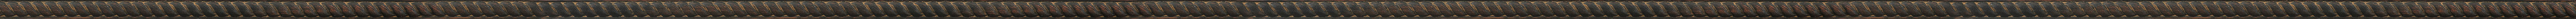 Σκαλιστή ντεκαπέ μαύρη κορνίζα frame